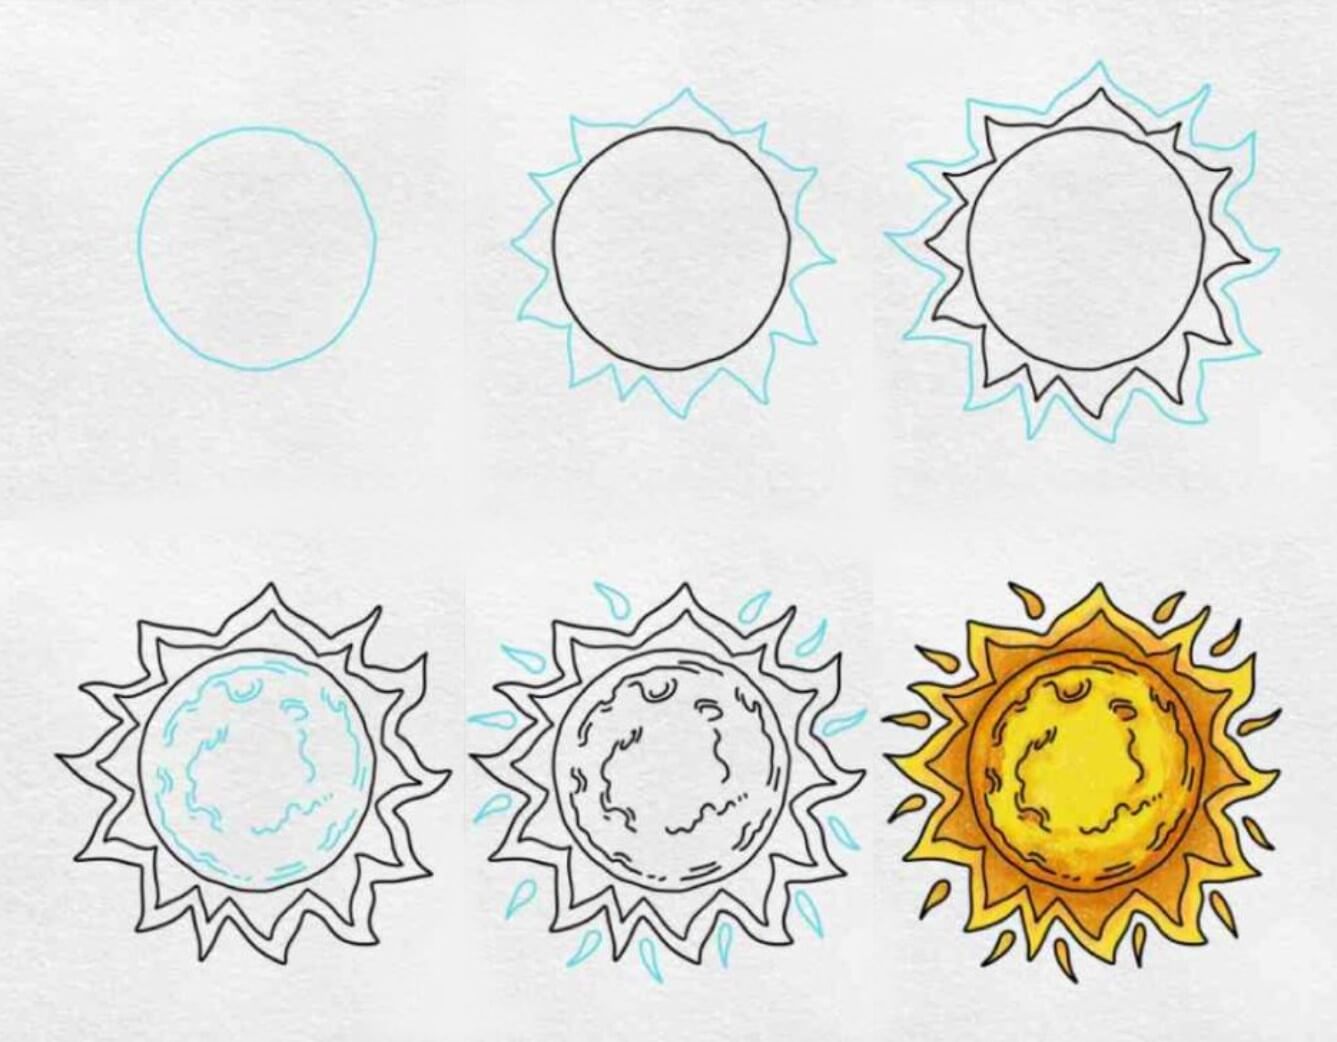 Güneş fikri (1) çizimi